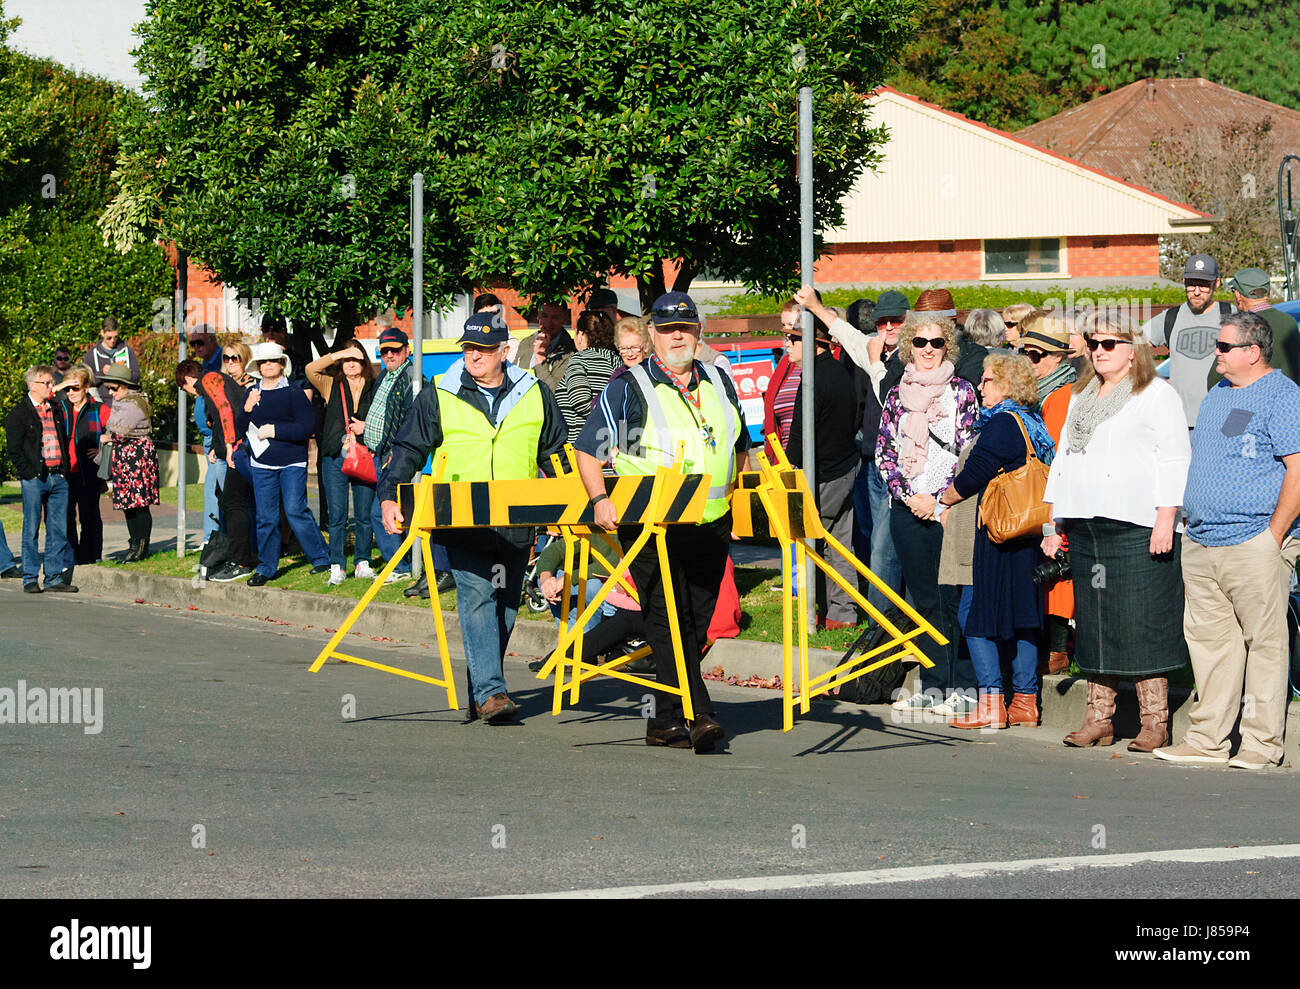 Le contrôle des foules coopératives portant des gilets haute visibilité la fermeture de la rue pendant un festival, Berry, New South Wales, NSW, Australie Banque D'Images